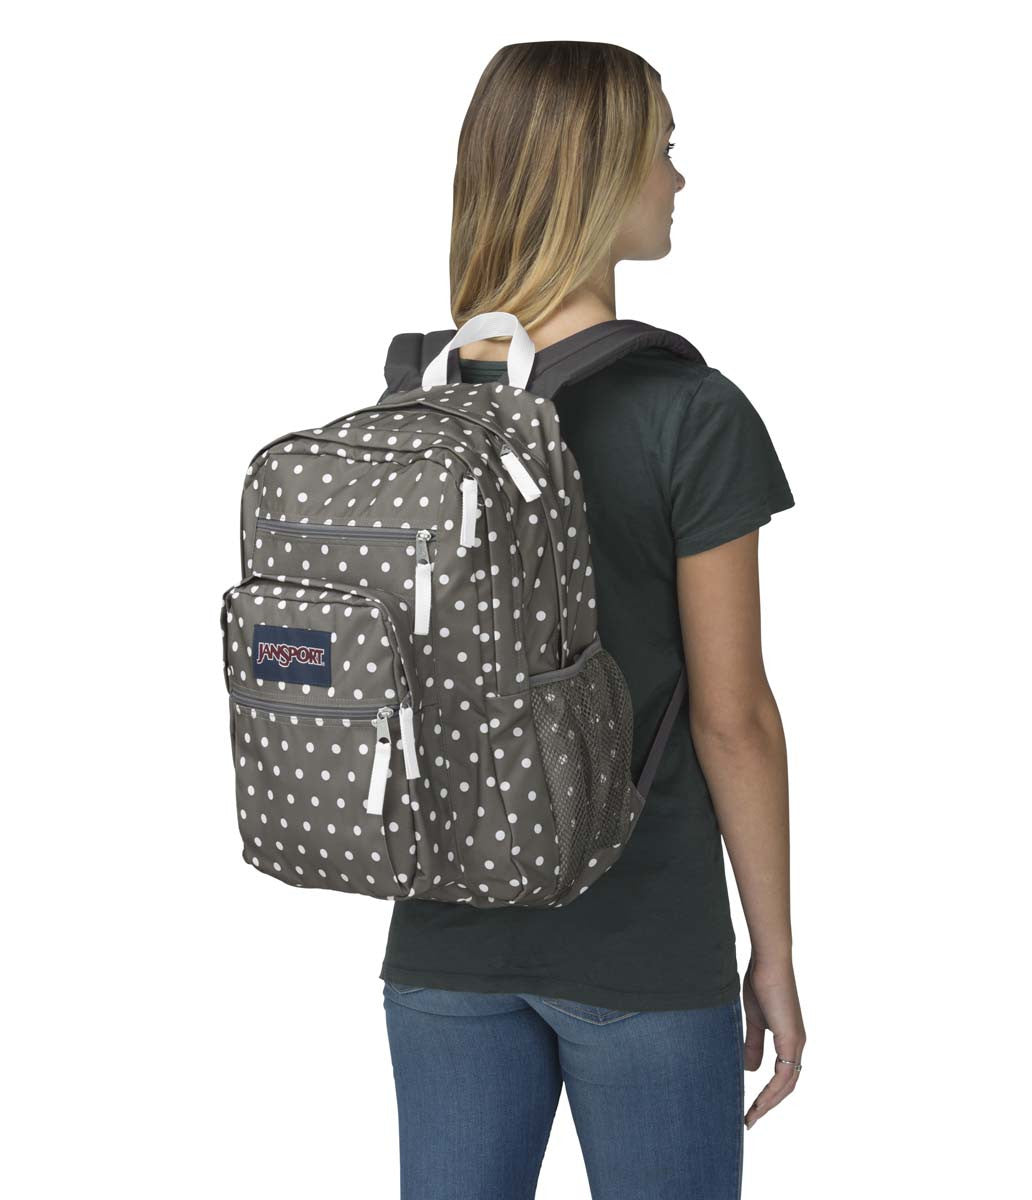 jansport grey polka dot backpack